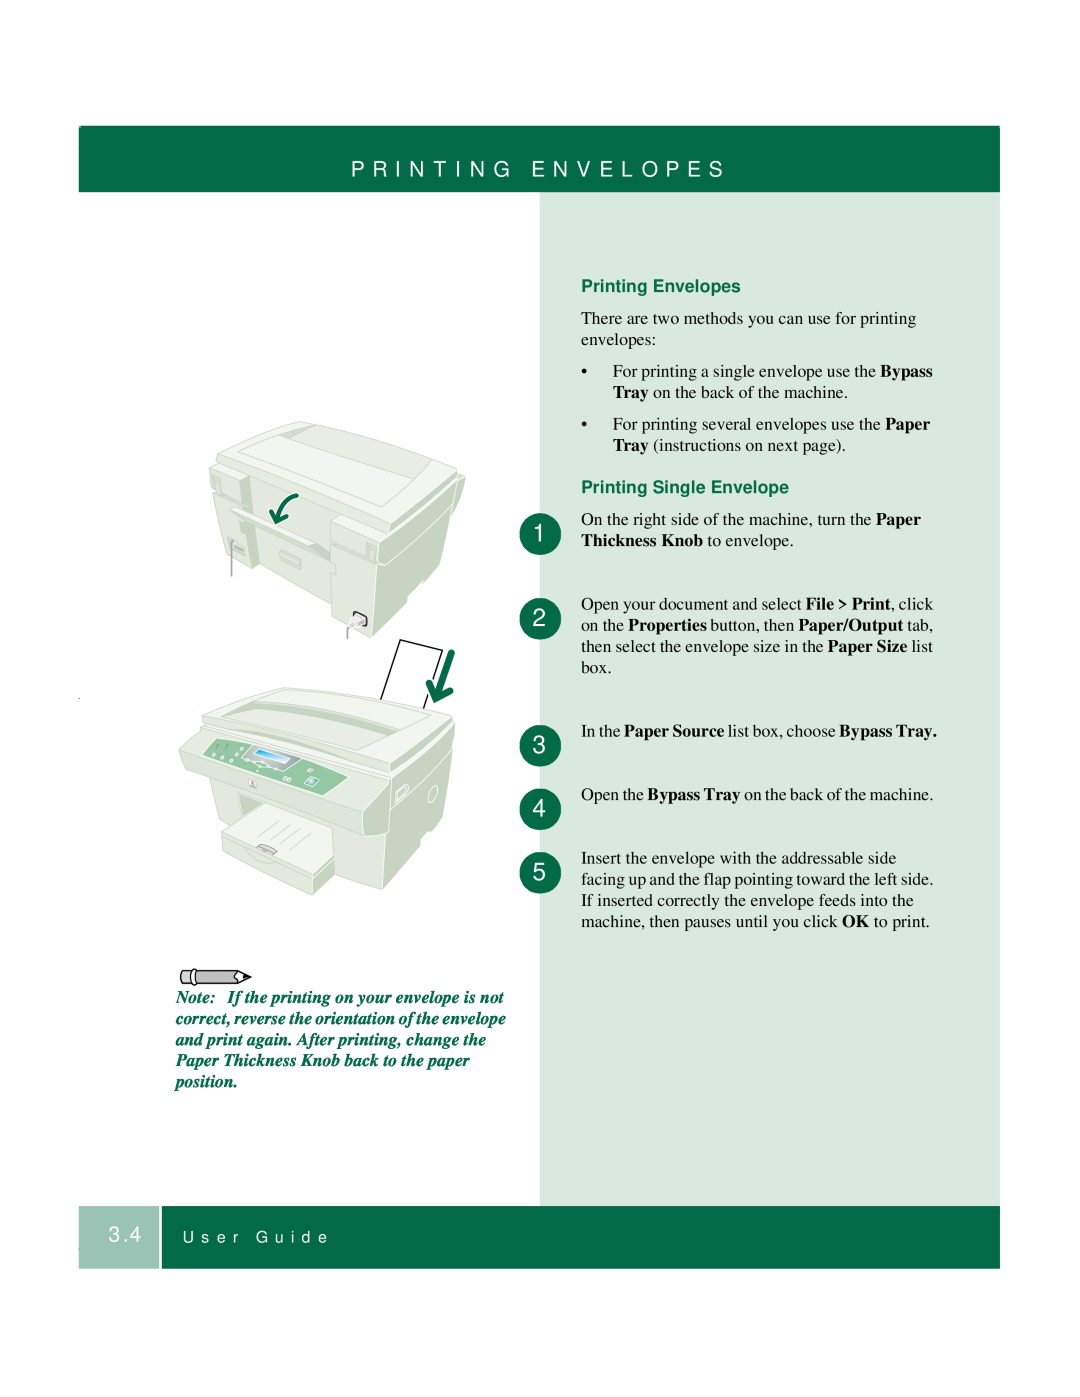 Xerox 701P35371 manual P R I N T I N G E N V E L O P E S, Printing Envelopes, Printing Single Envelope 